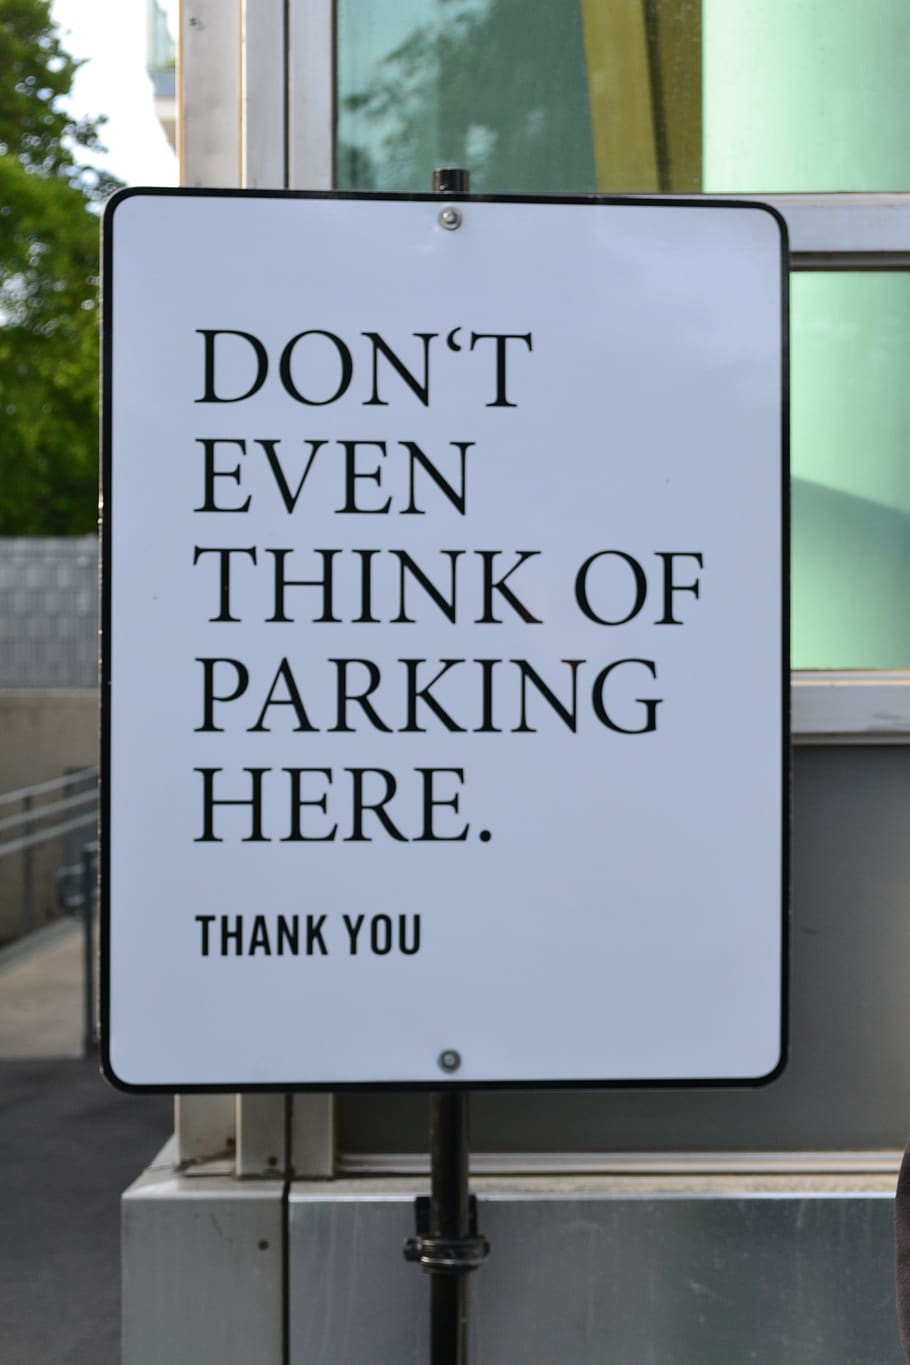 tanda parkir, parkir, terlarang, jalan, peringatan, informasi, tanda lucu, humor, teks, komunikasi